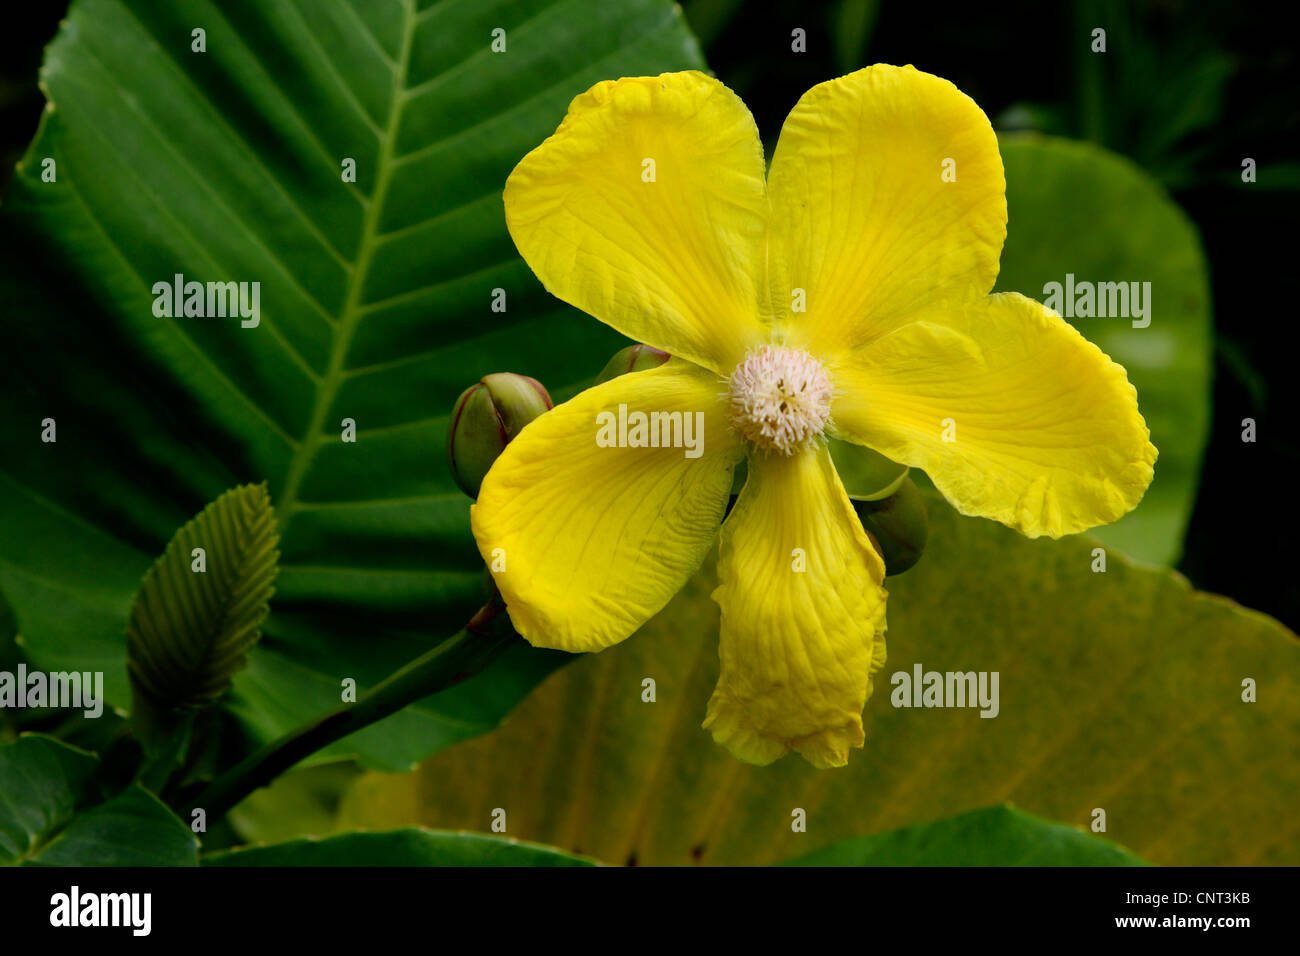 Dillenia (Dillenia suffruticosa), flower, Malaysia Stock Photo